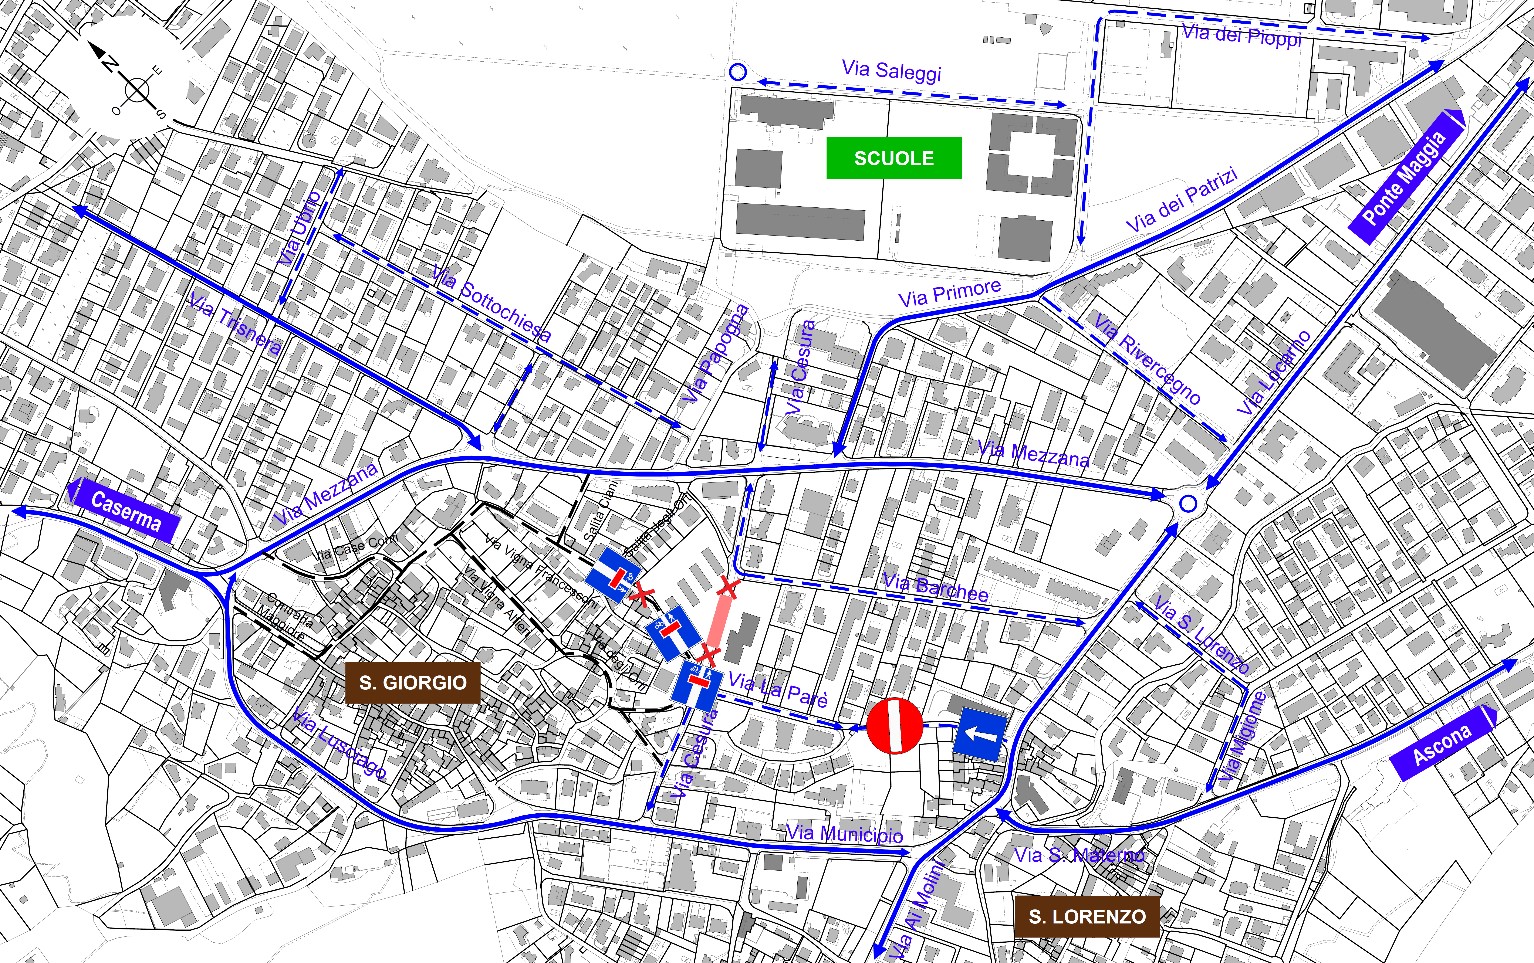 La mappa della nuova circolazione stradale nel comparto della Casa anziani medicalizzata.